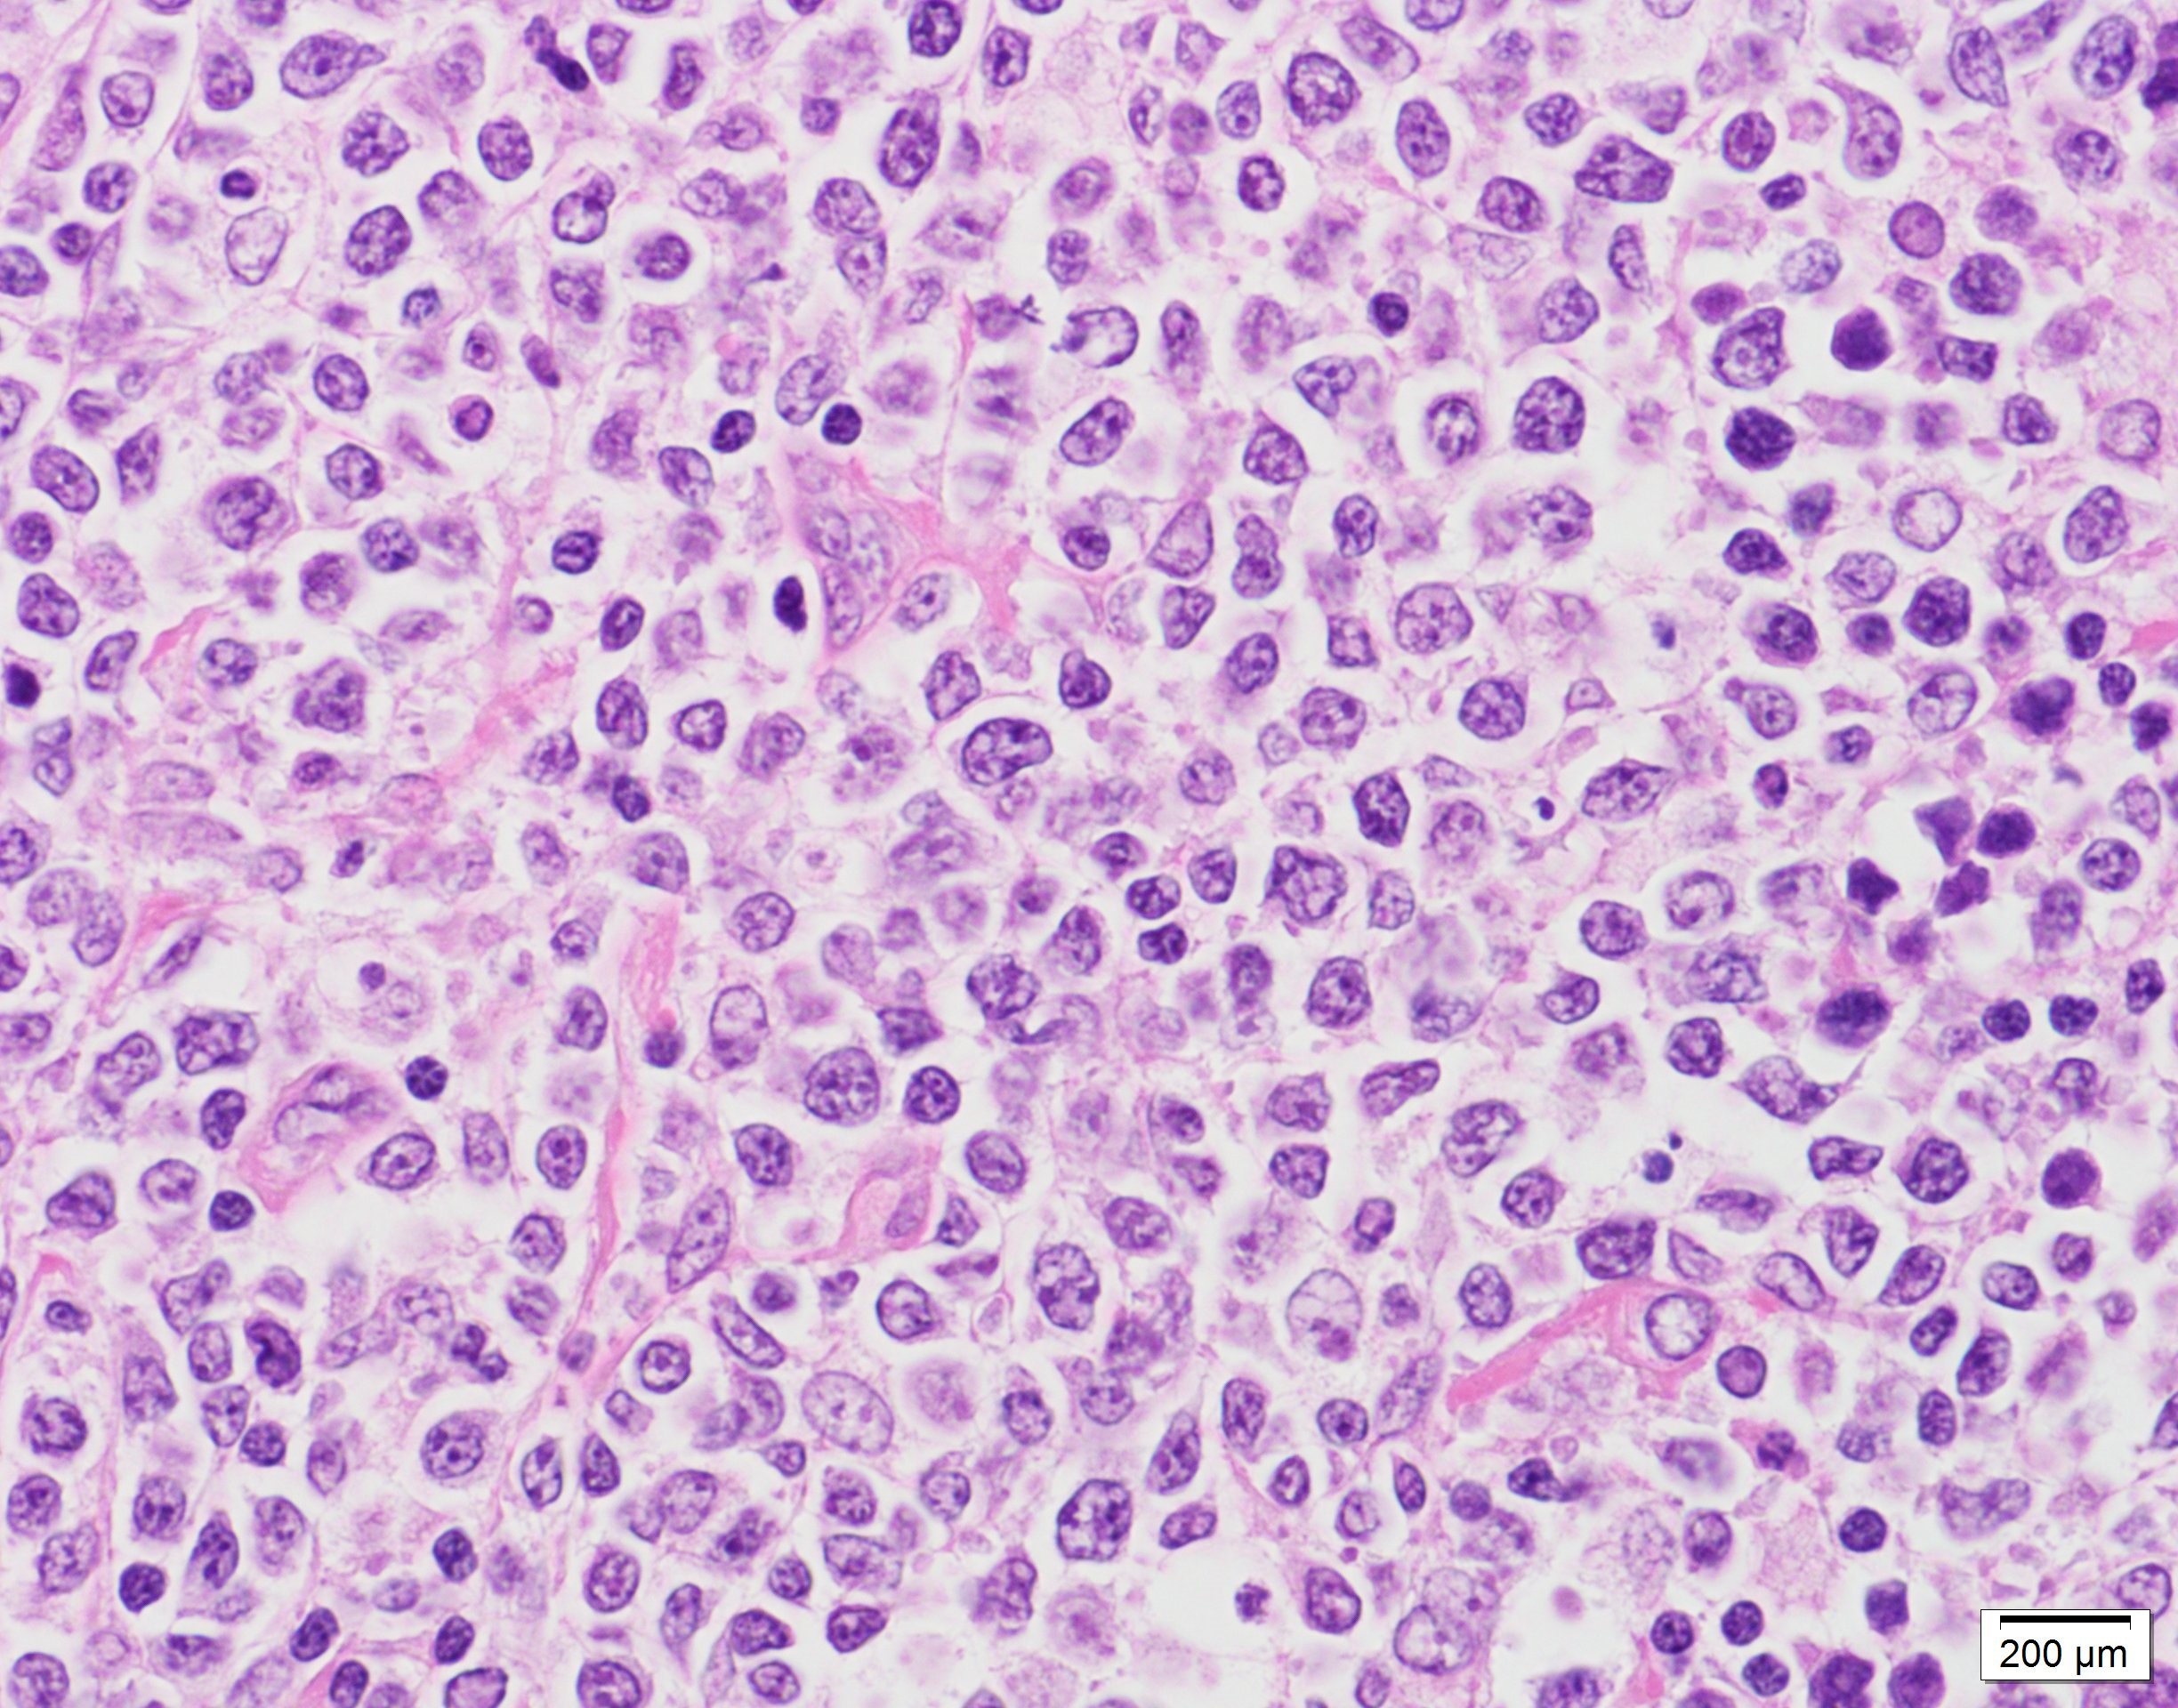 びまん 性 大 細胞 型 b 細胞 リンパ腫